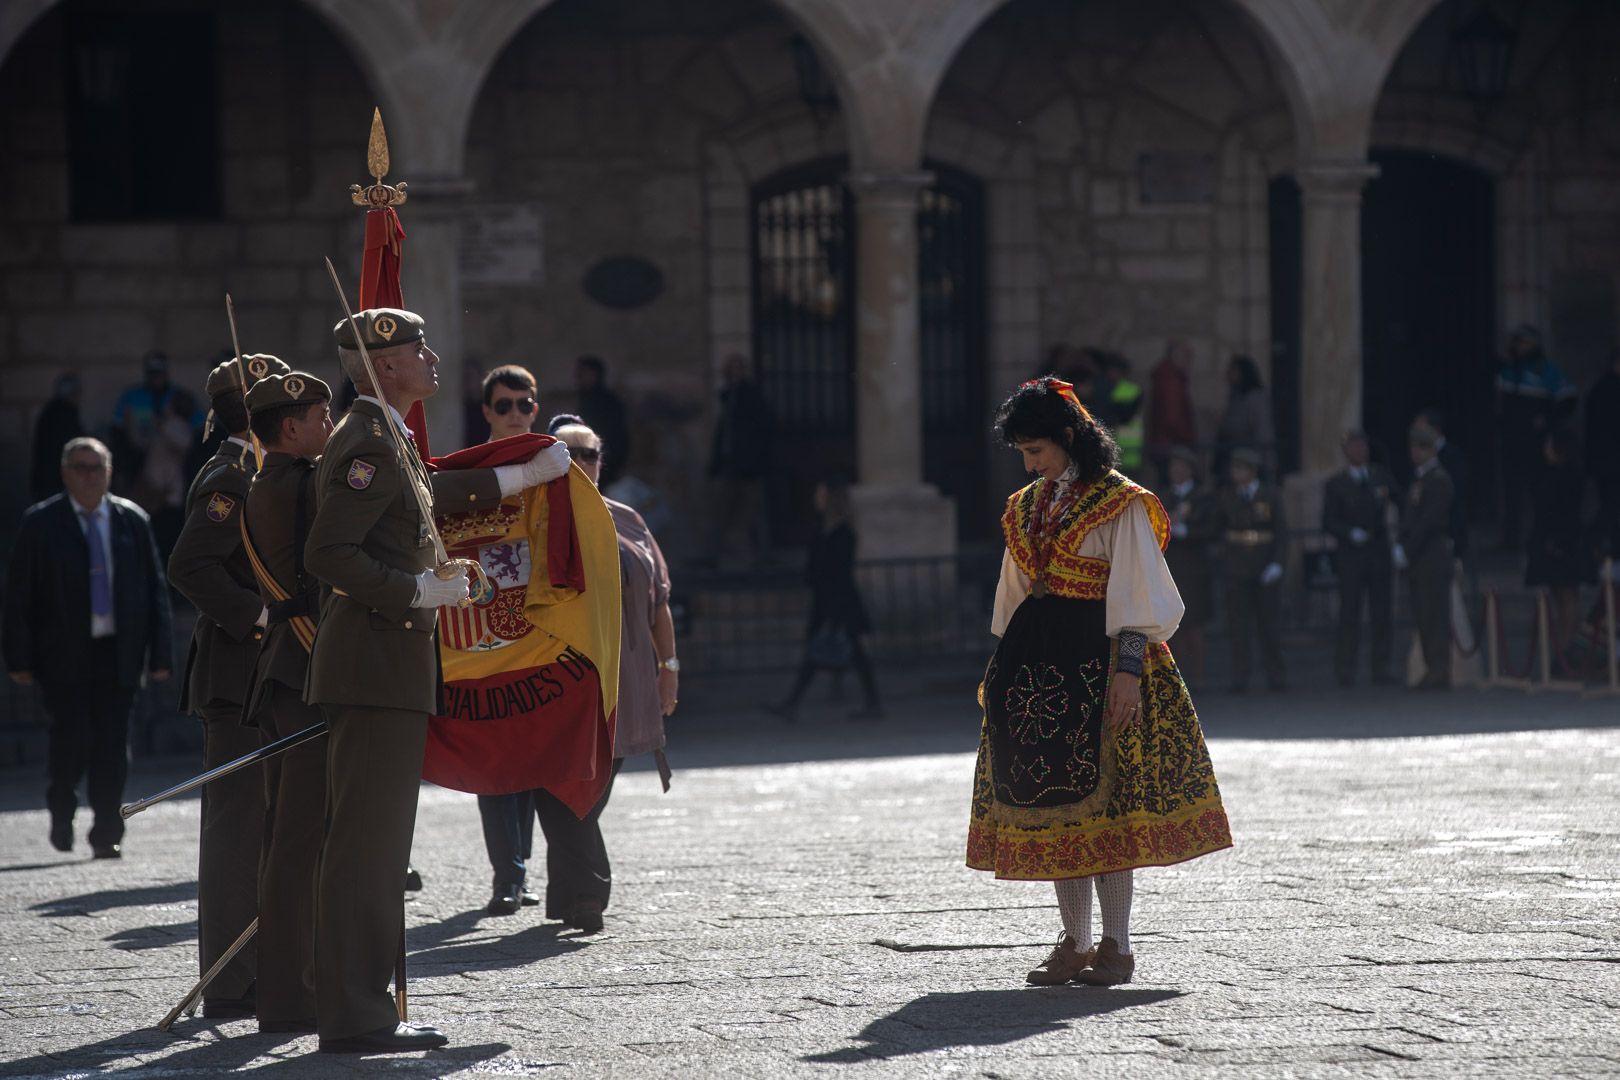 GALERÍA | La jura de bandera para civiles, en imágenes